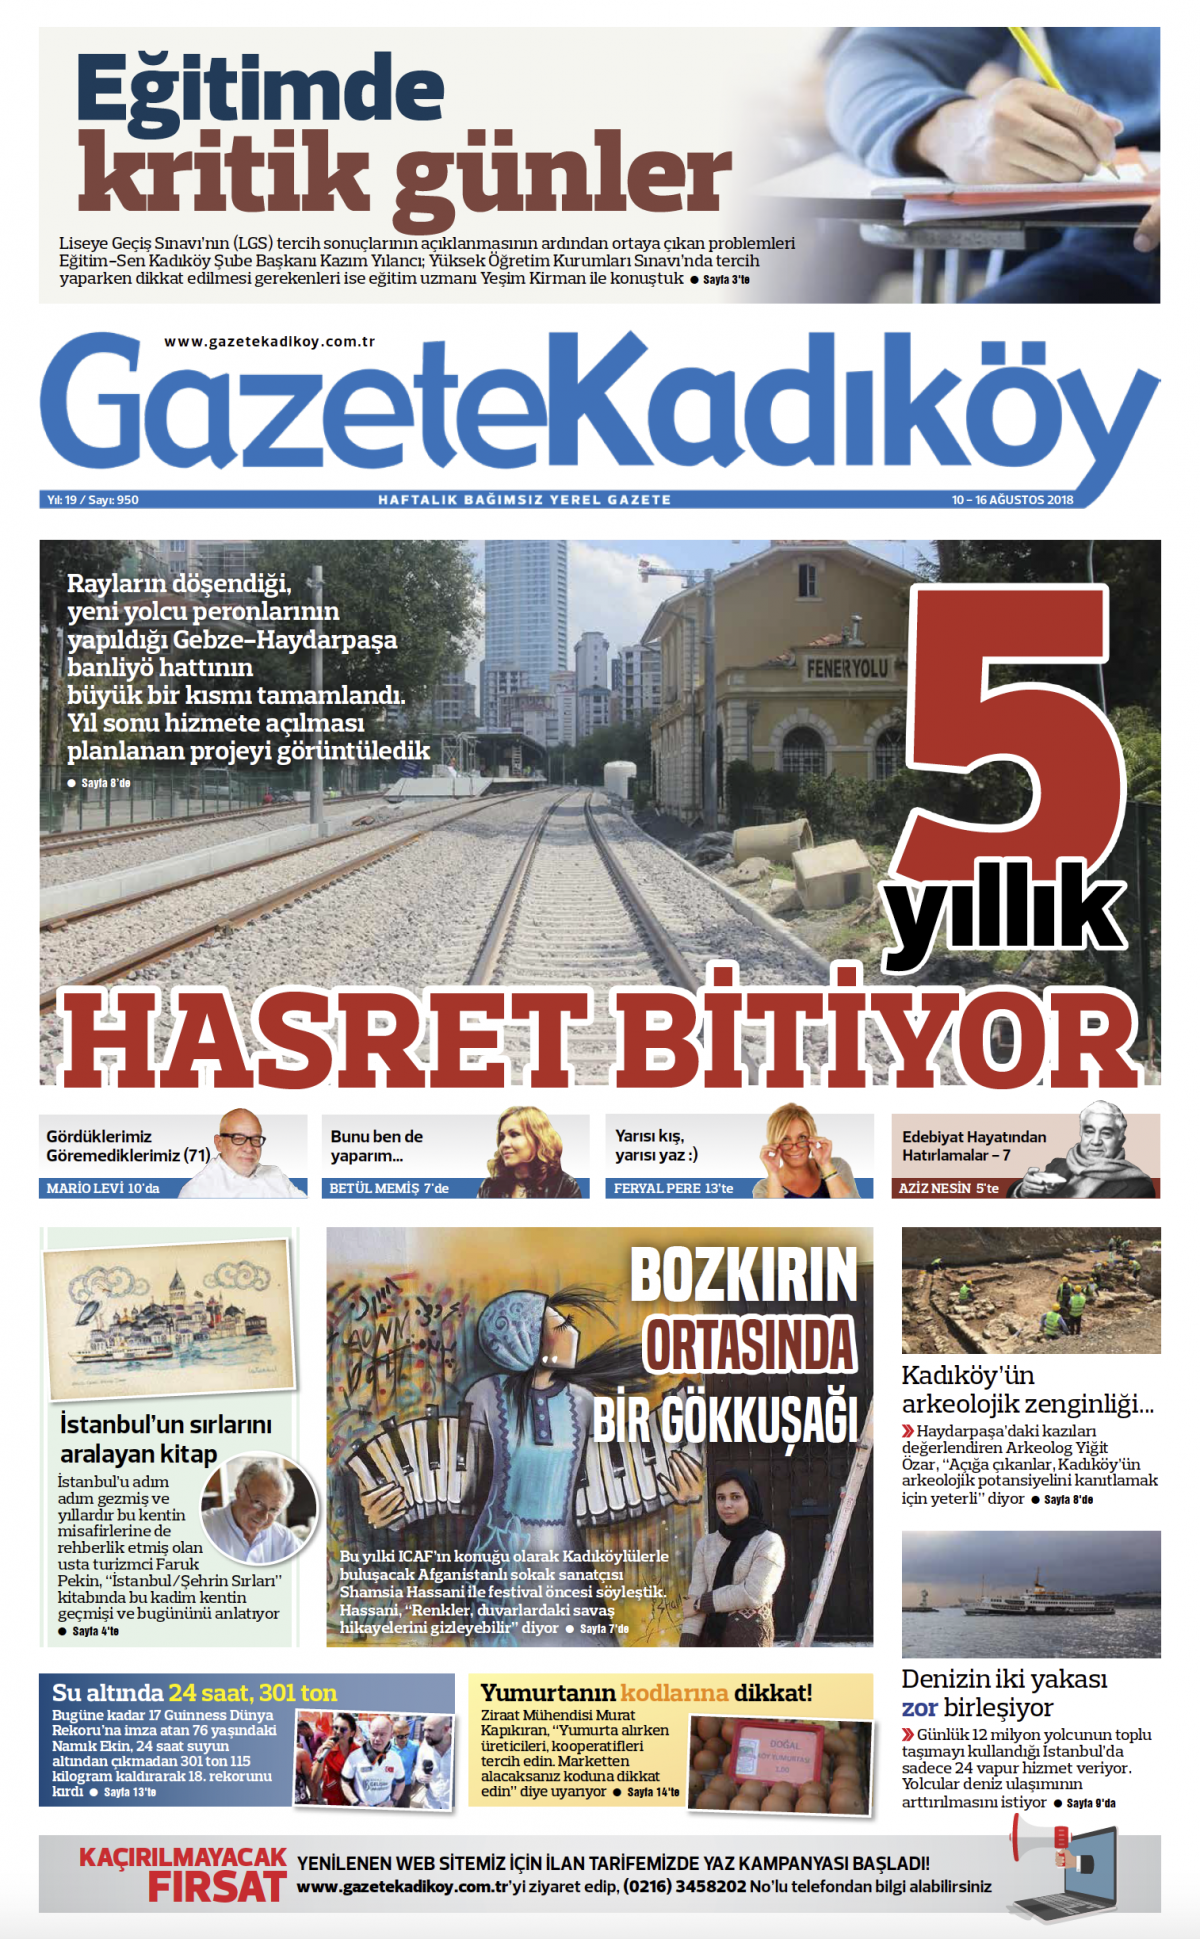 Gazete Kadıköy - 950.SAYI